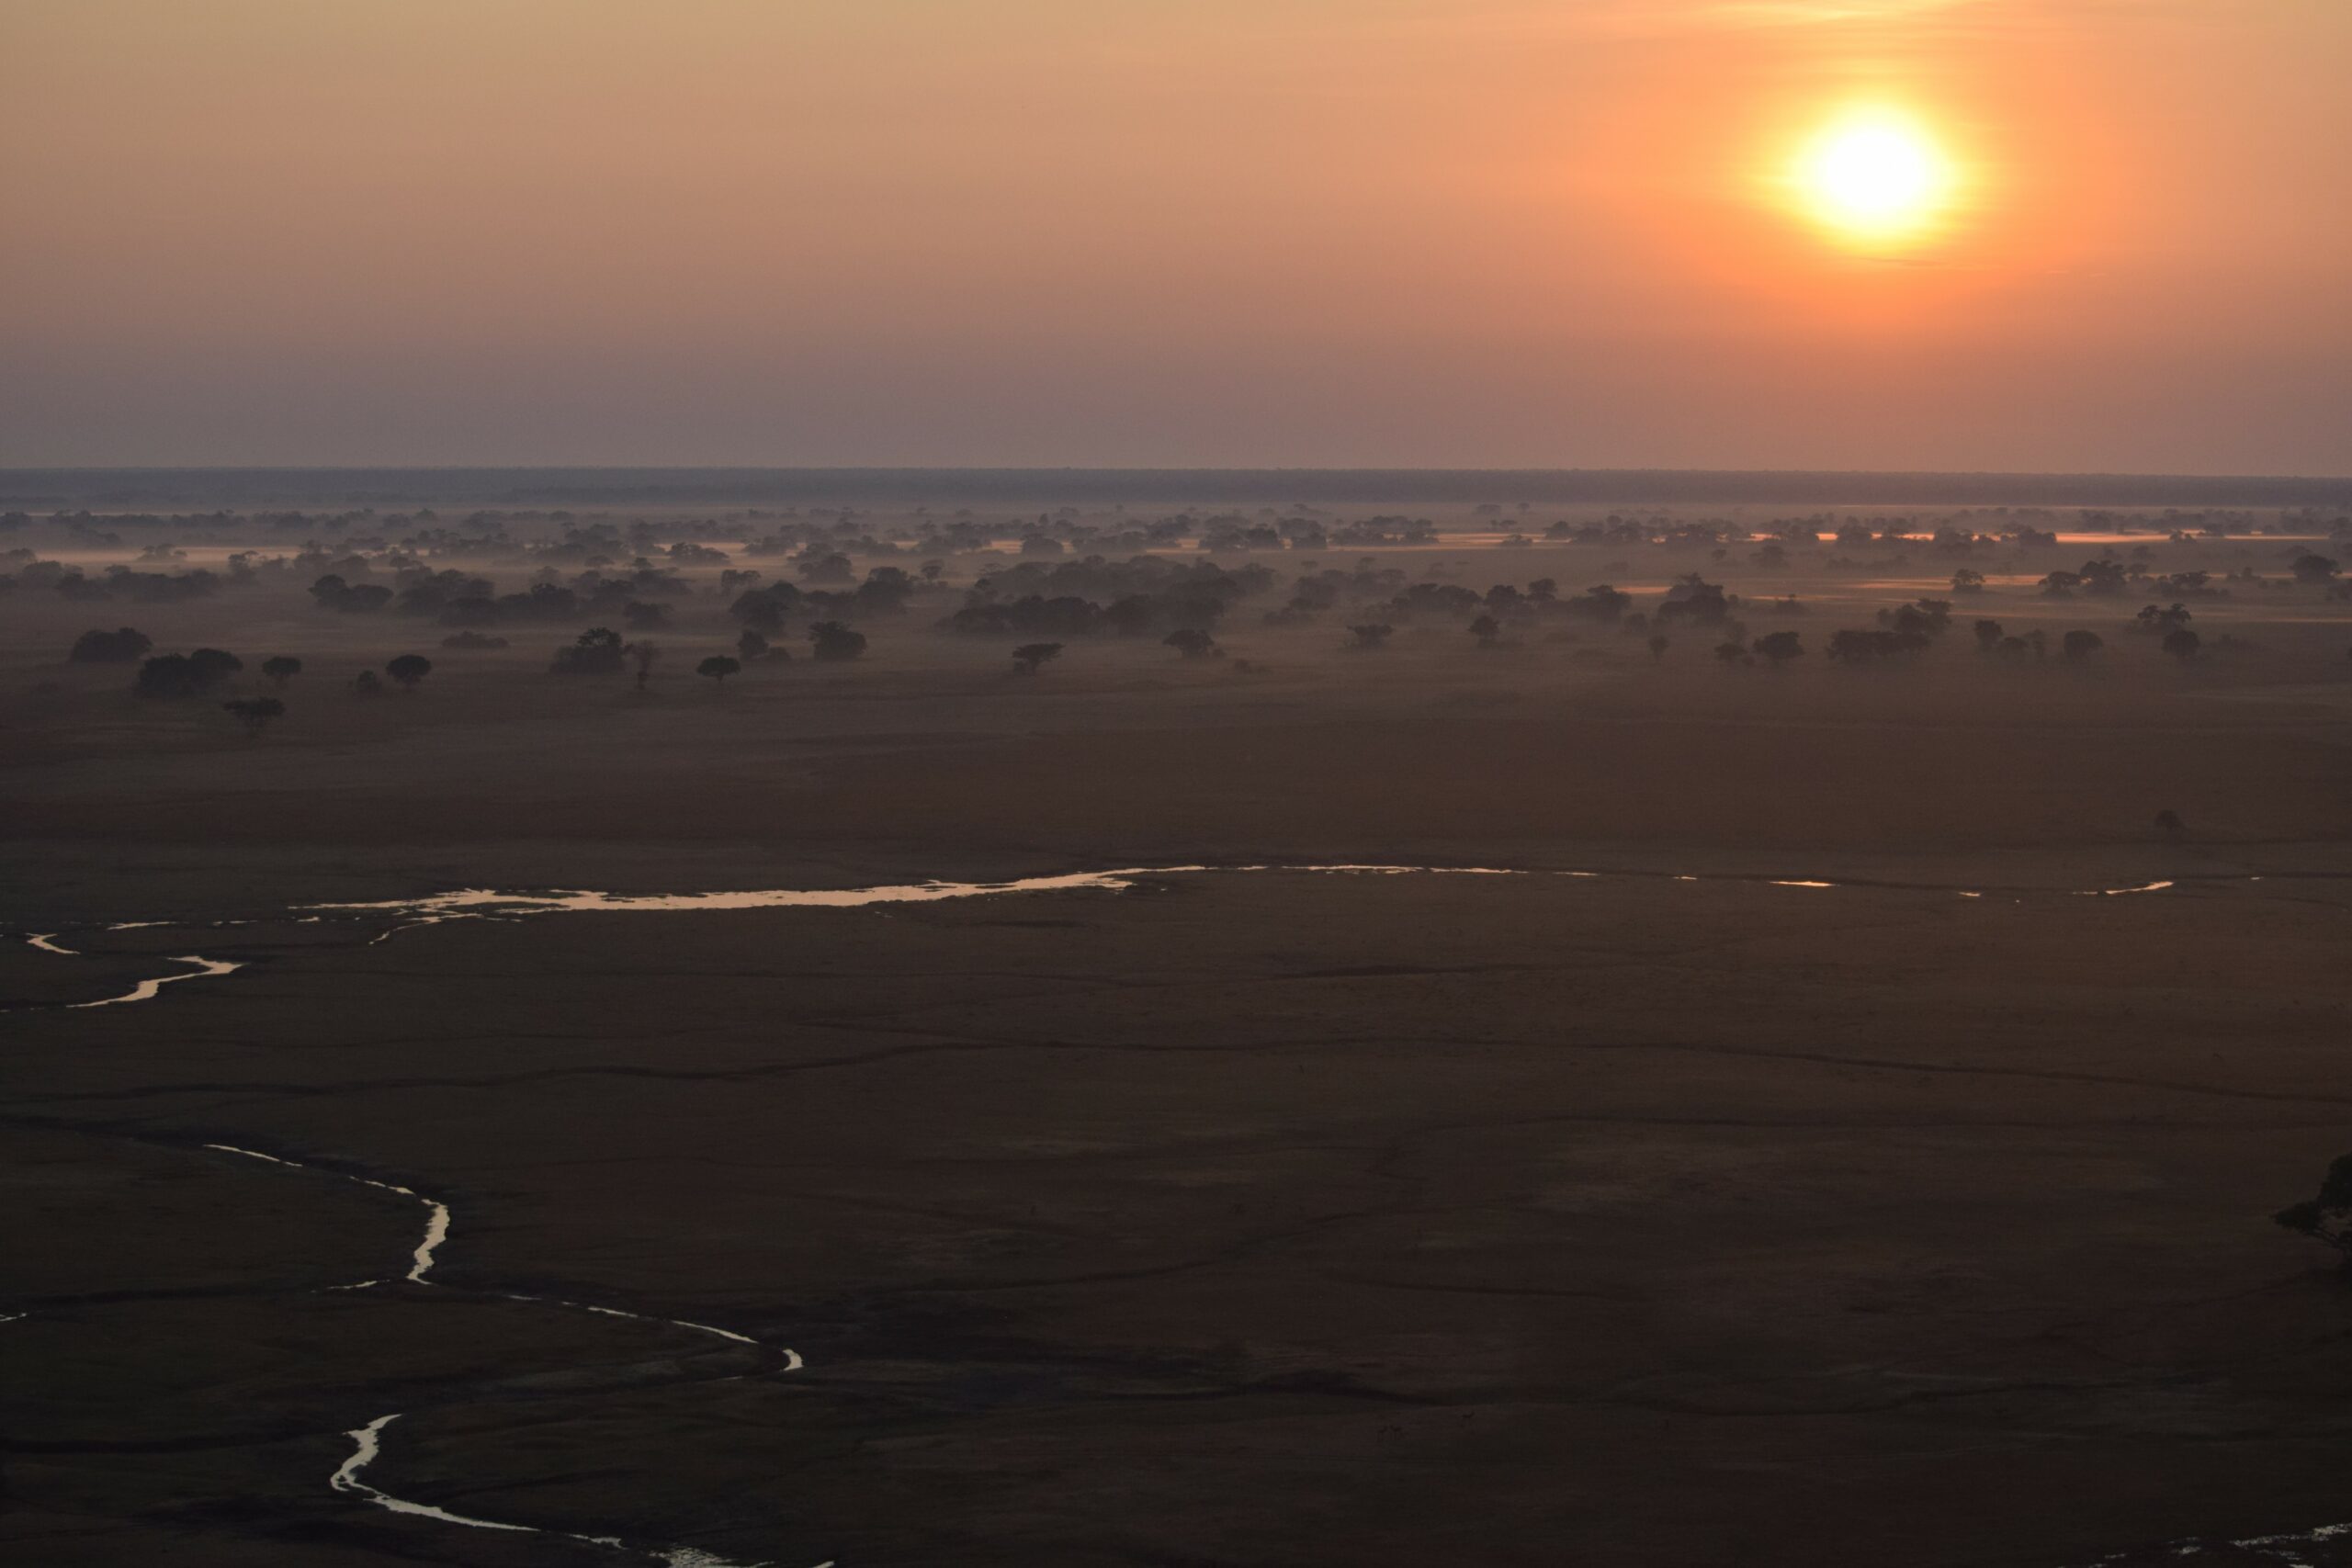 Sun setting on the Zambia plains